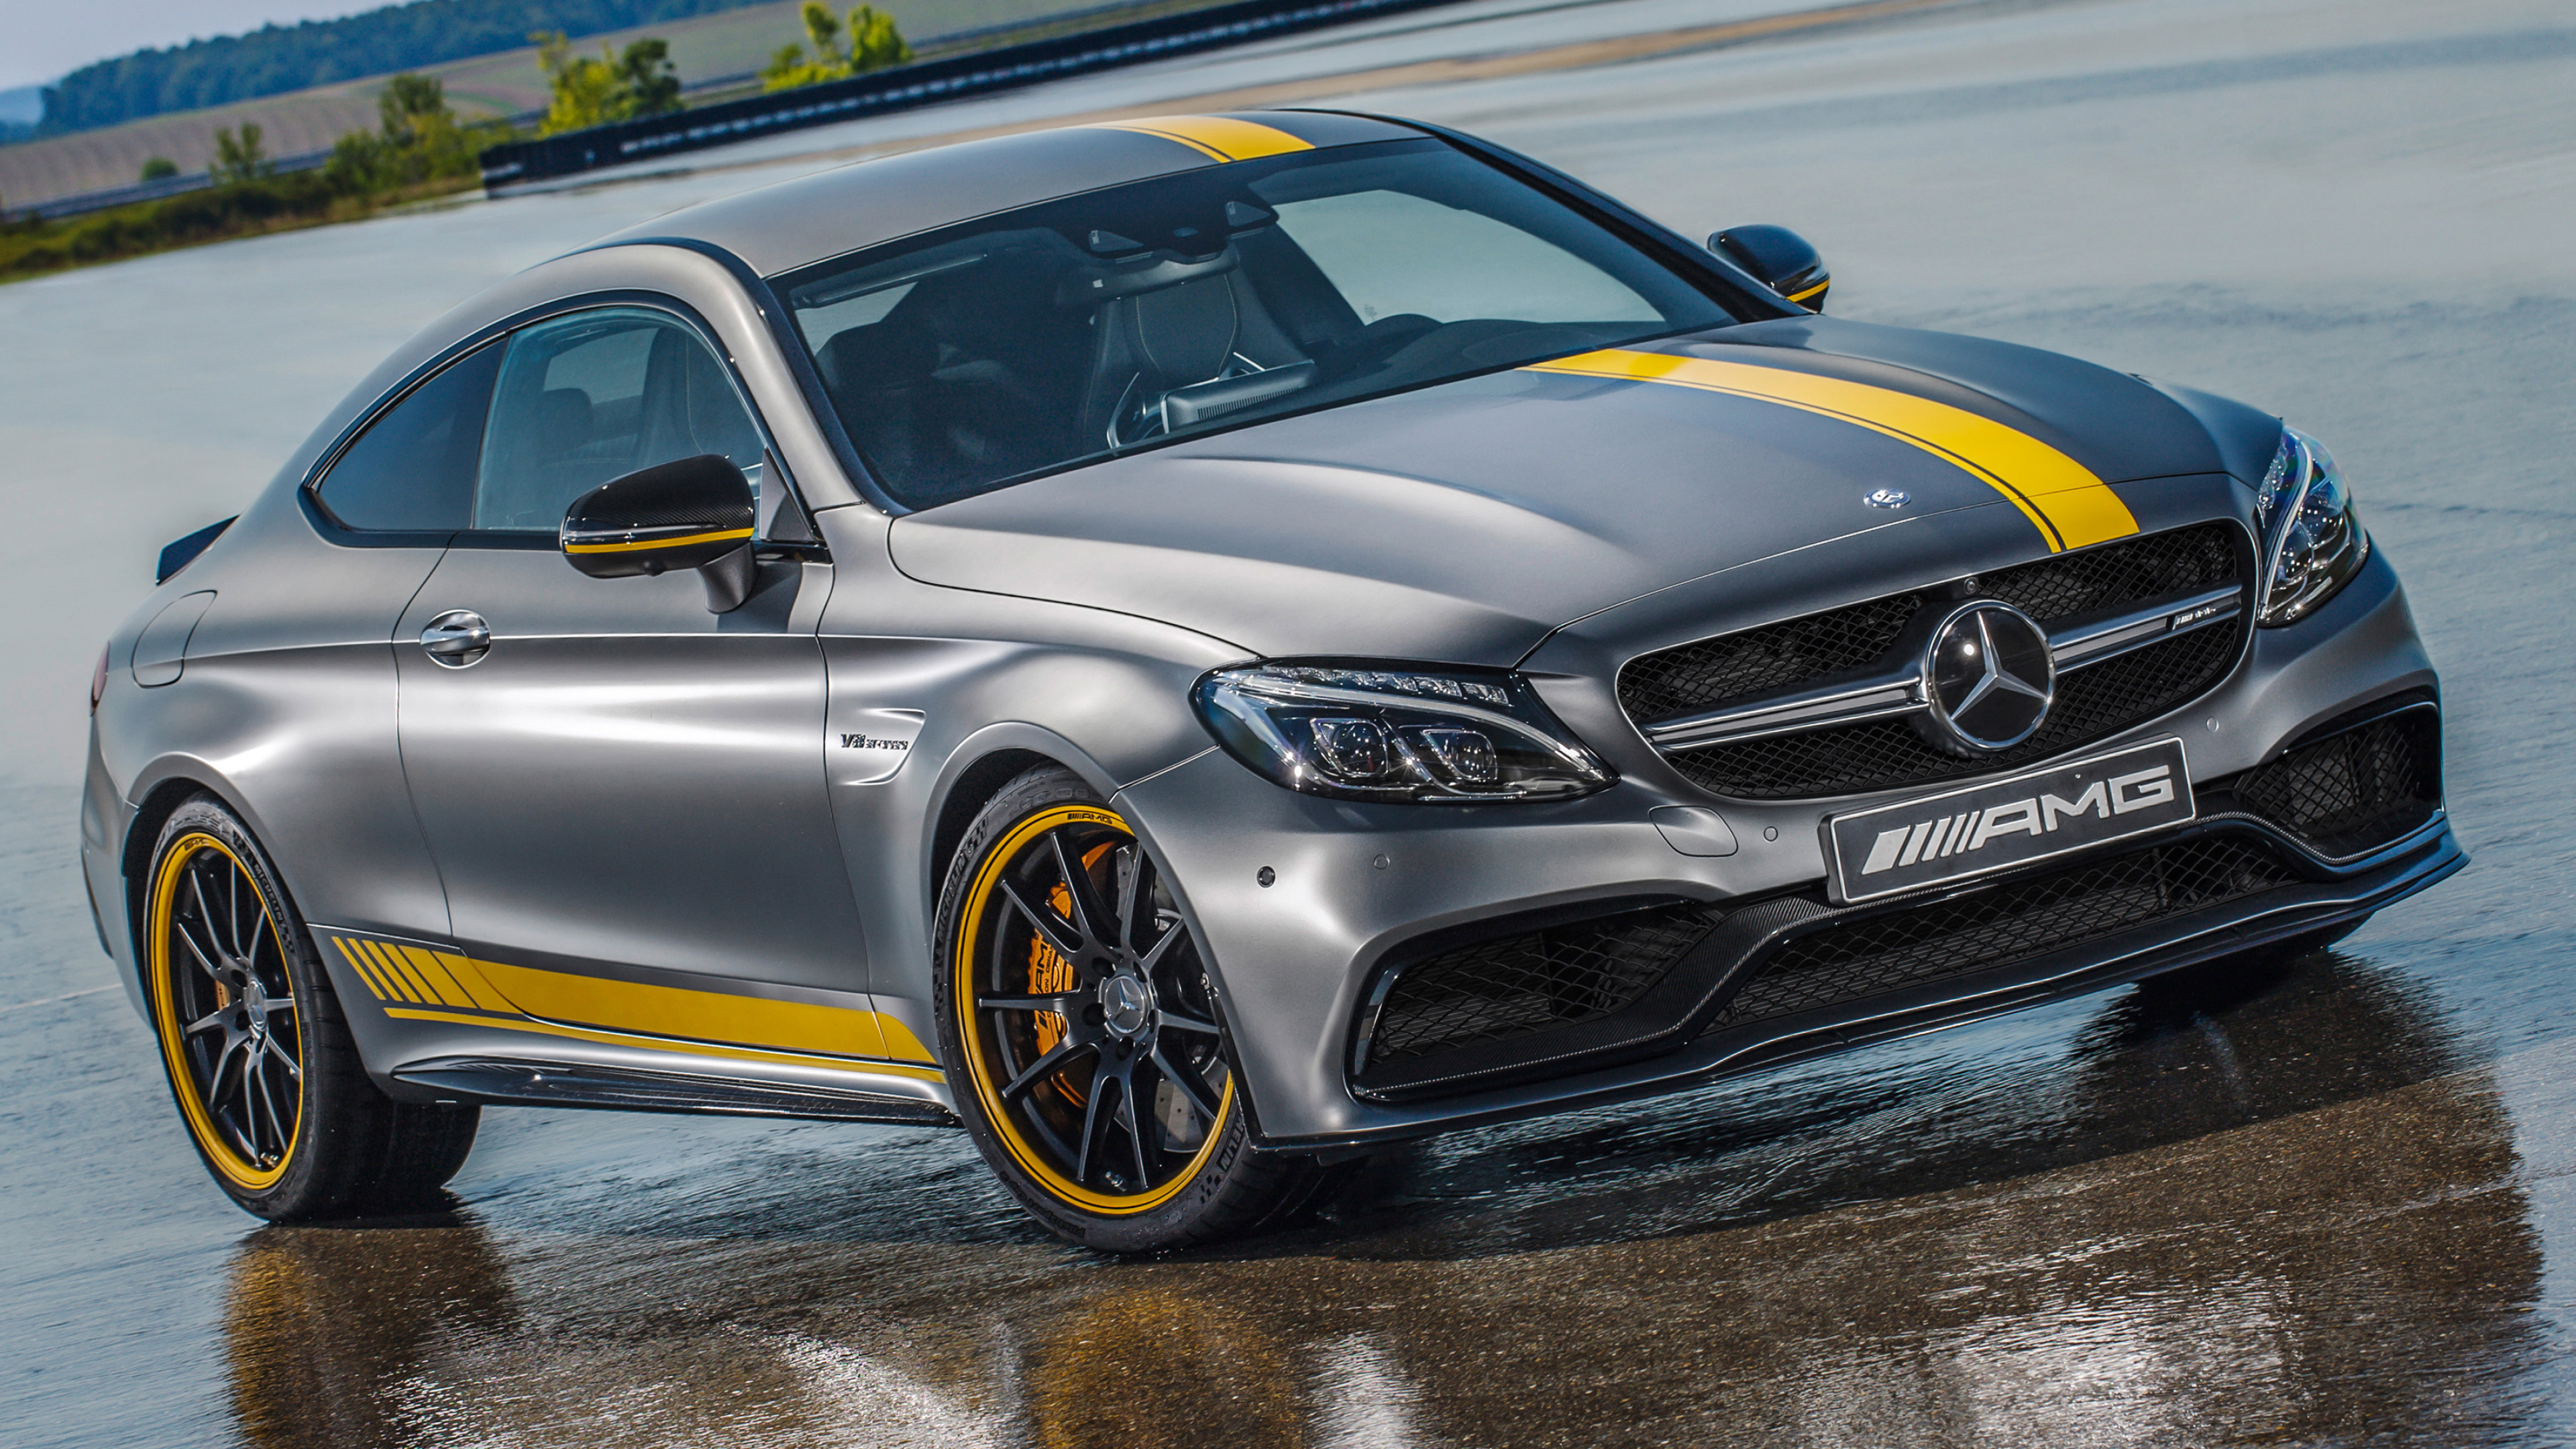 Mercedes-Benz C-Class, Coupe cars, Desktop wallpapers, 4k ultra hd, 3840x2160 4K Desktop